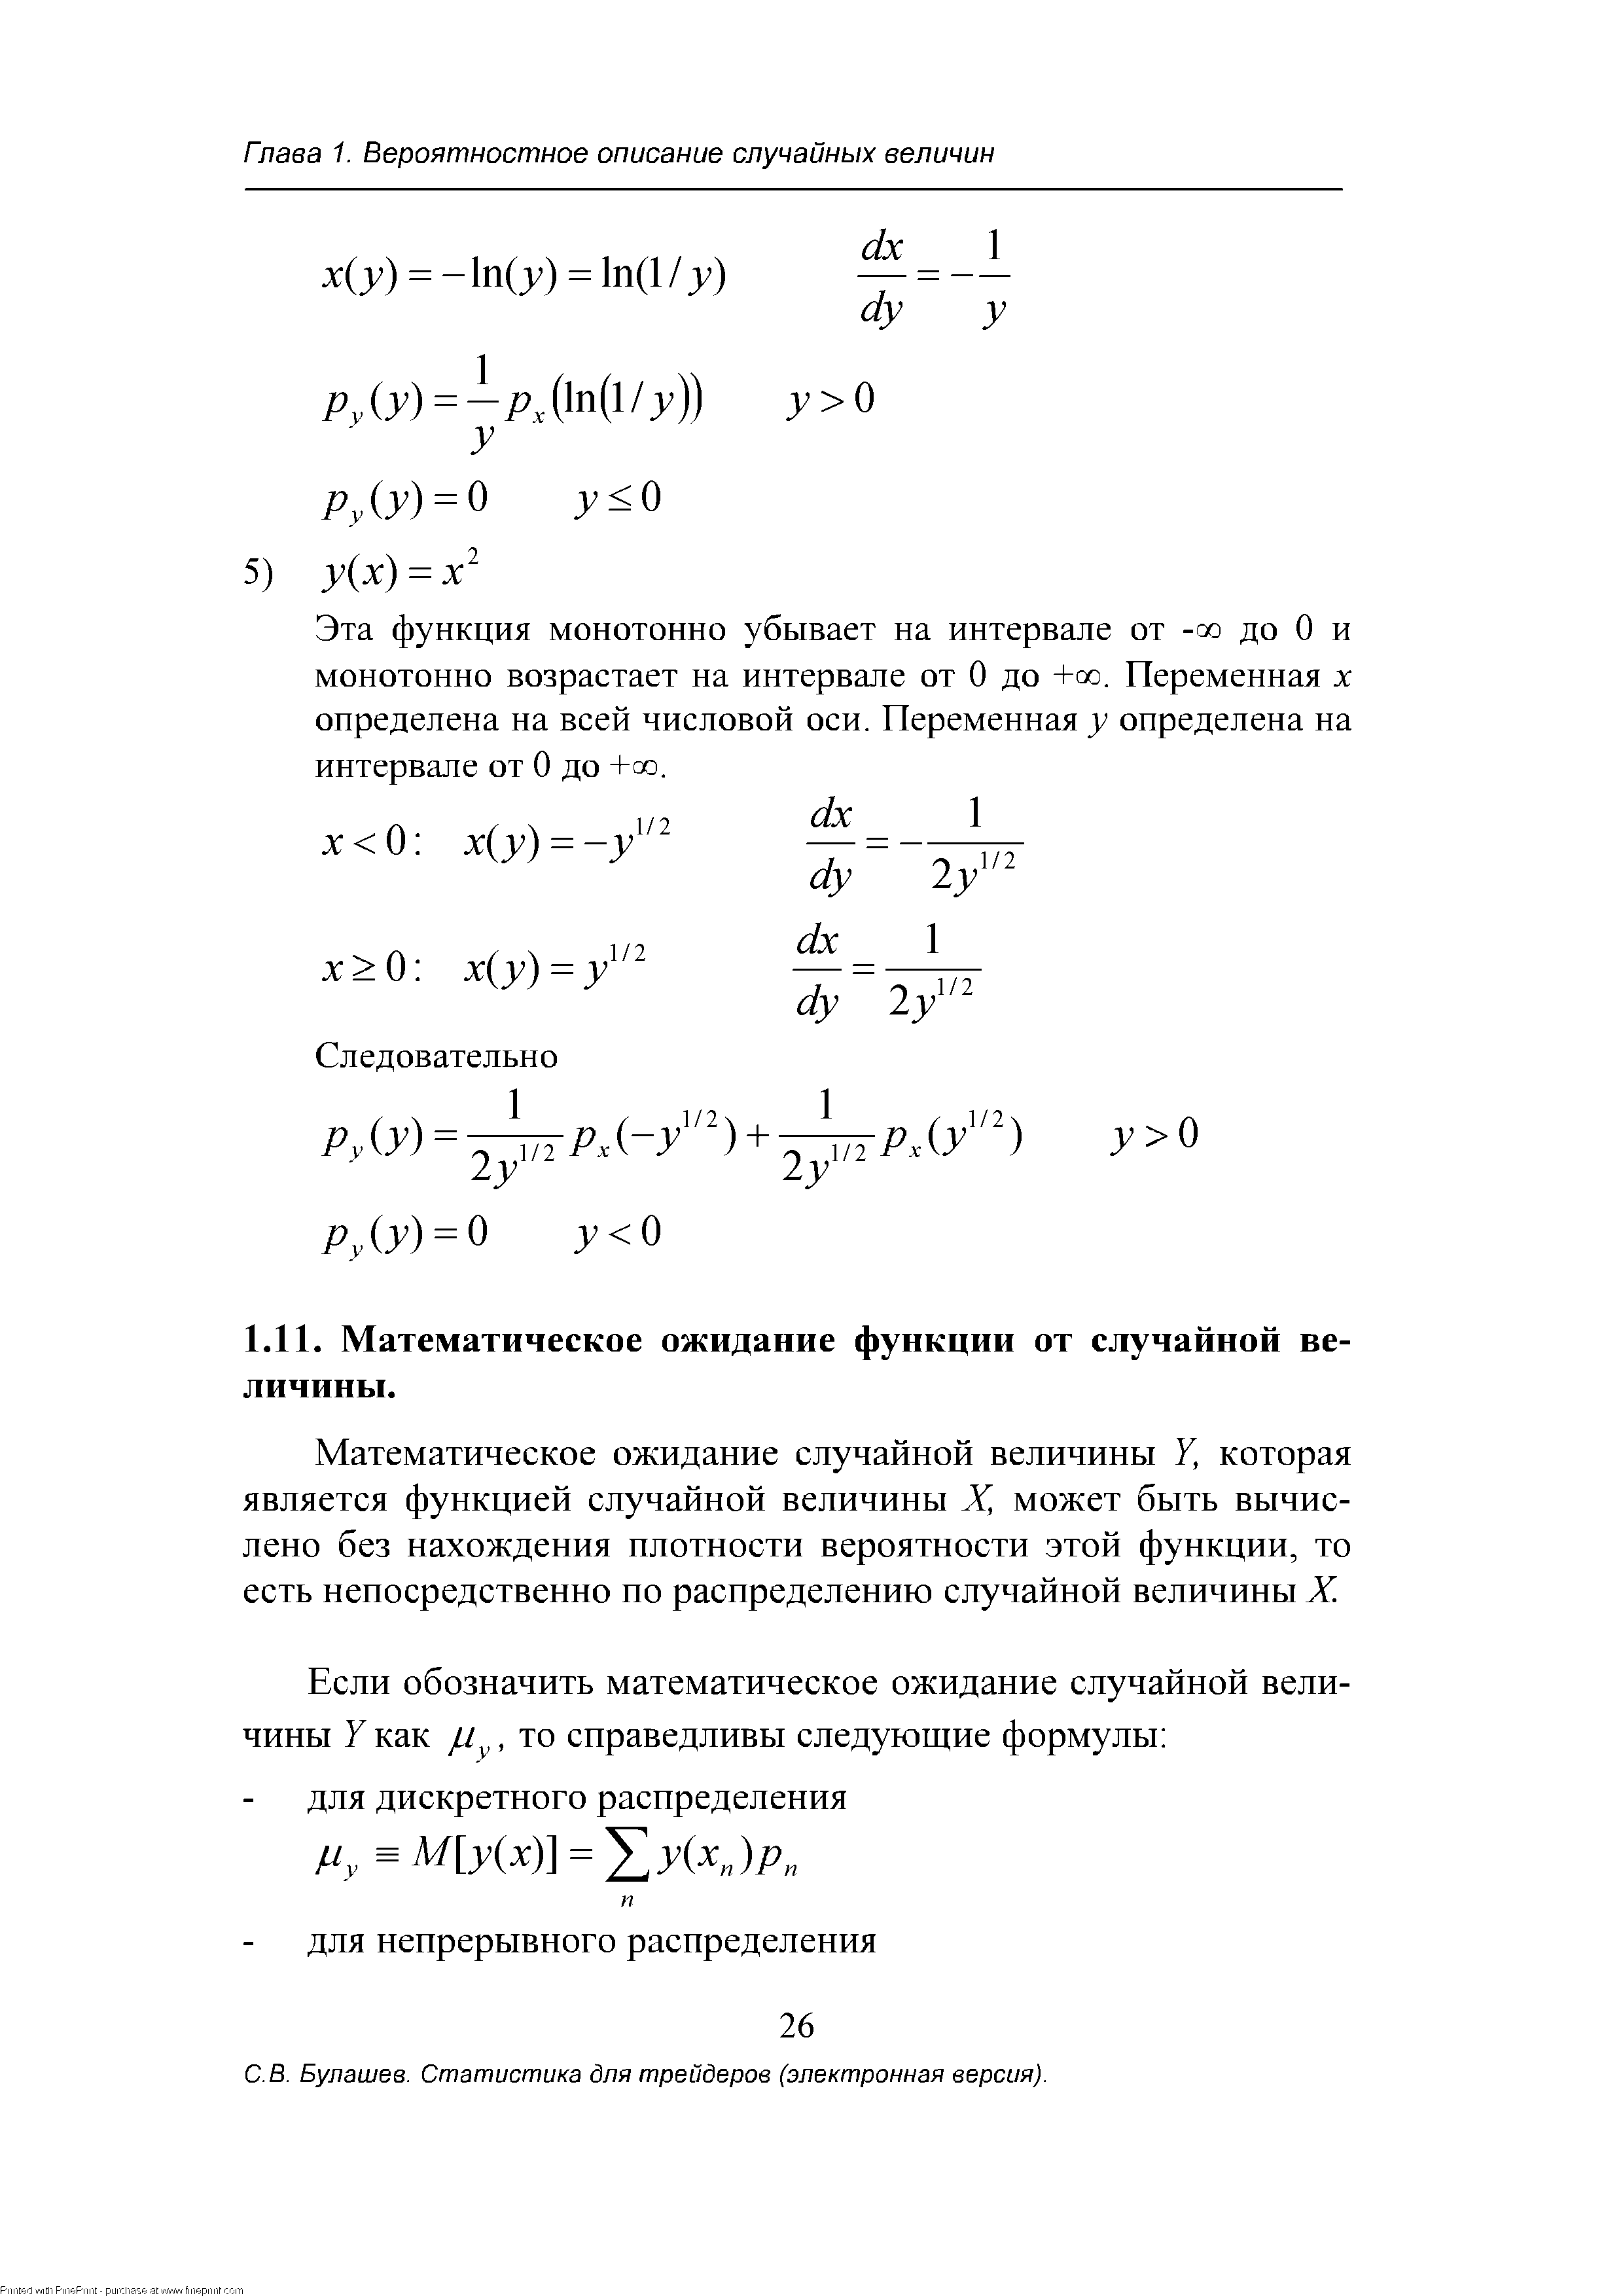 Математическое ожидание случайной величины 7, которая является функцией случайной величины X, может быть вычислено без нахождения плотности вероятности этой функции, то есть непосредственно по распределению случайной величины X.
